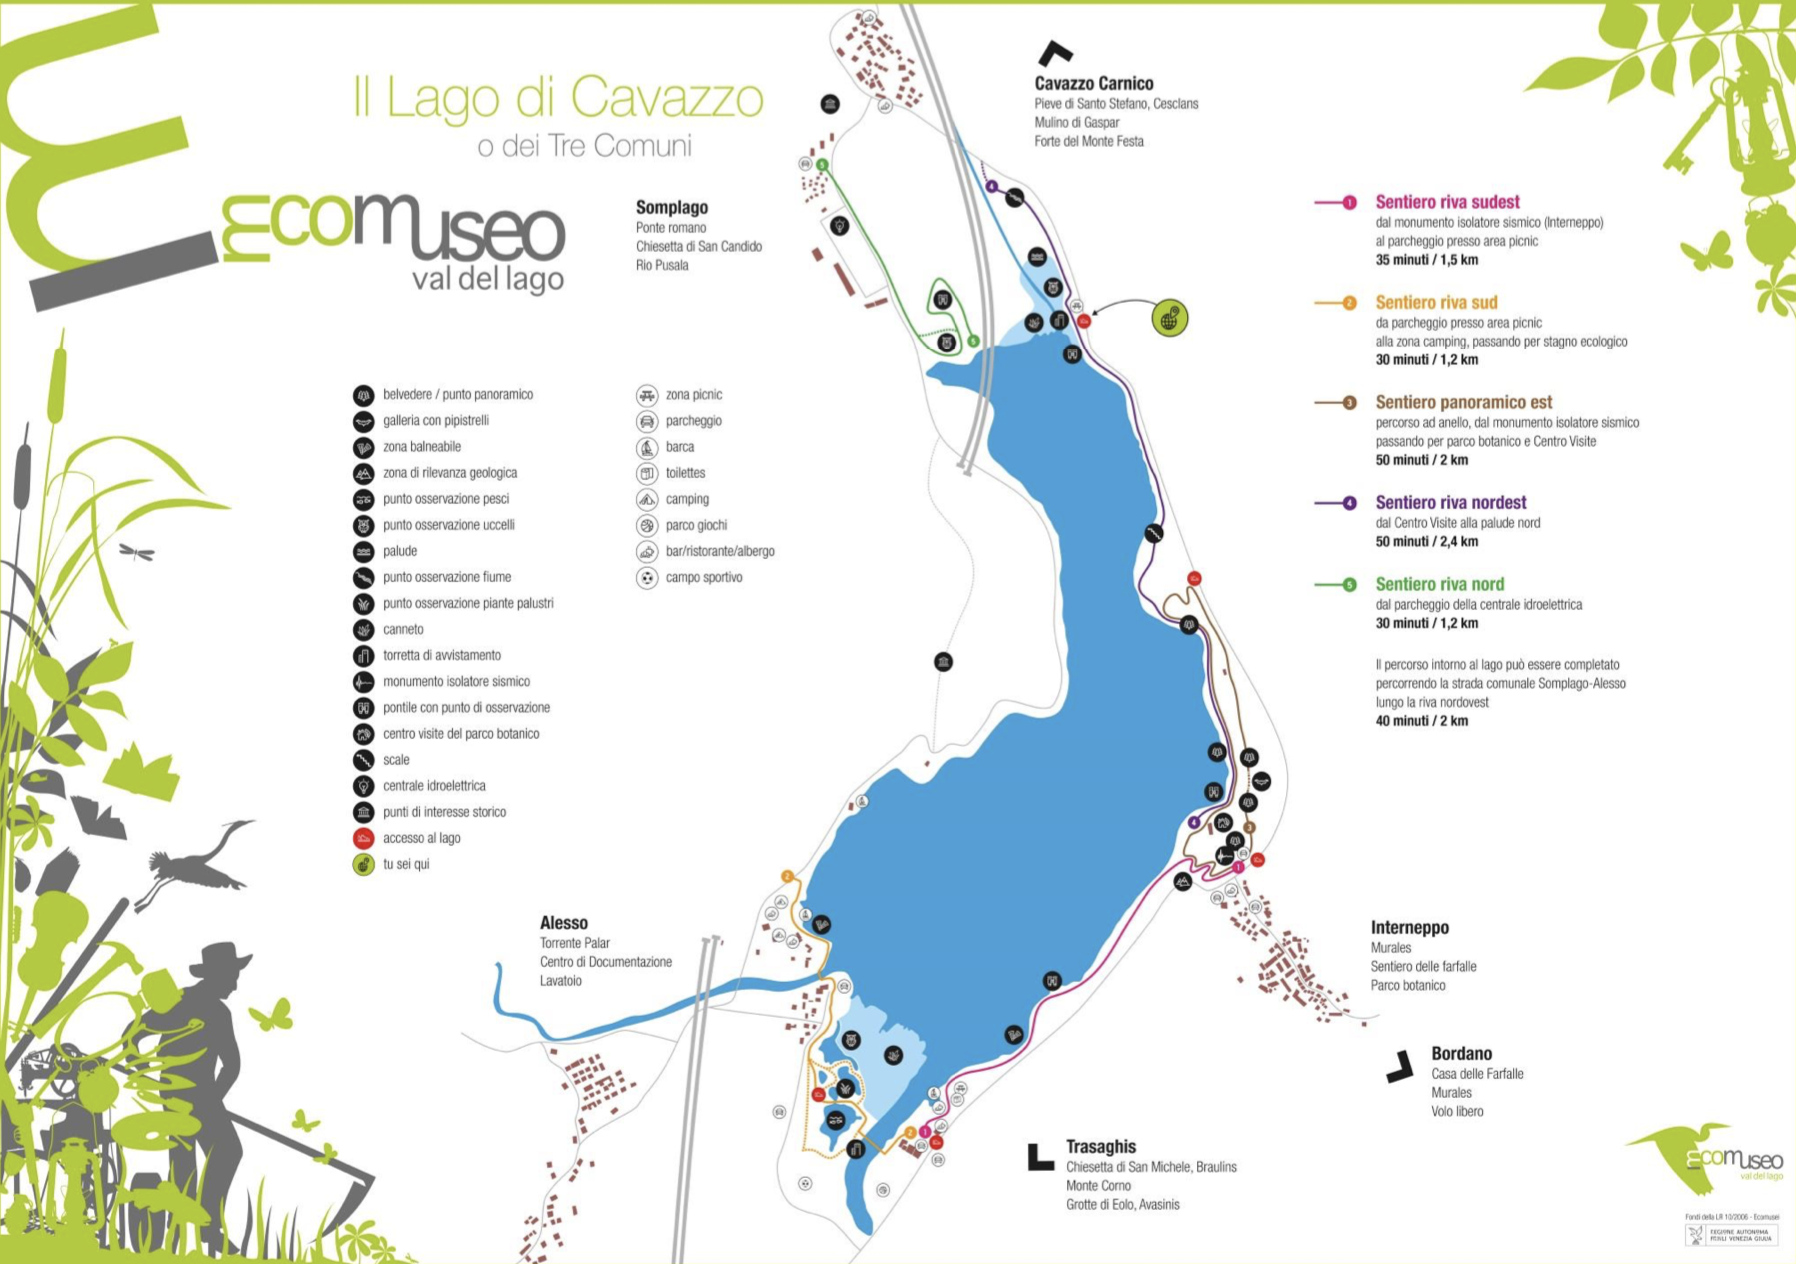 Lago di Cavazzo - Credits EcoMuseo